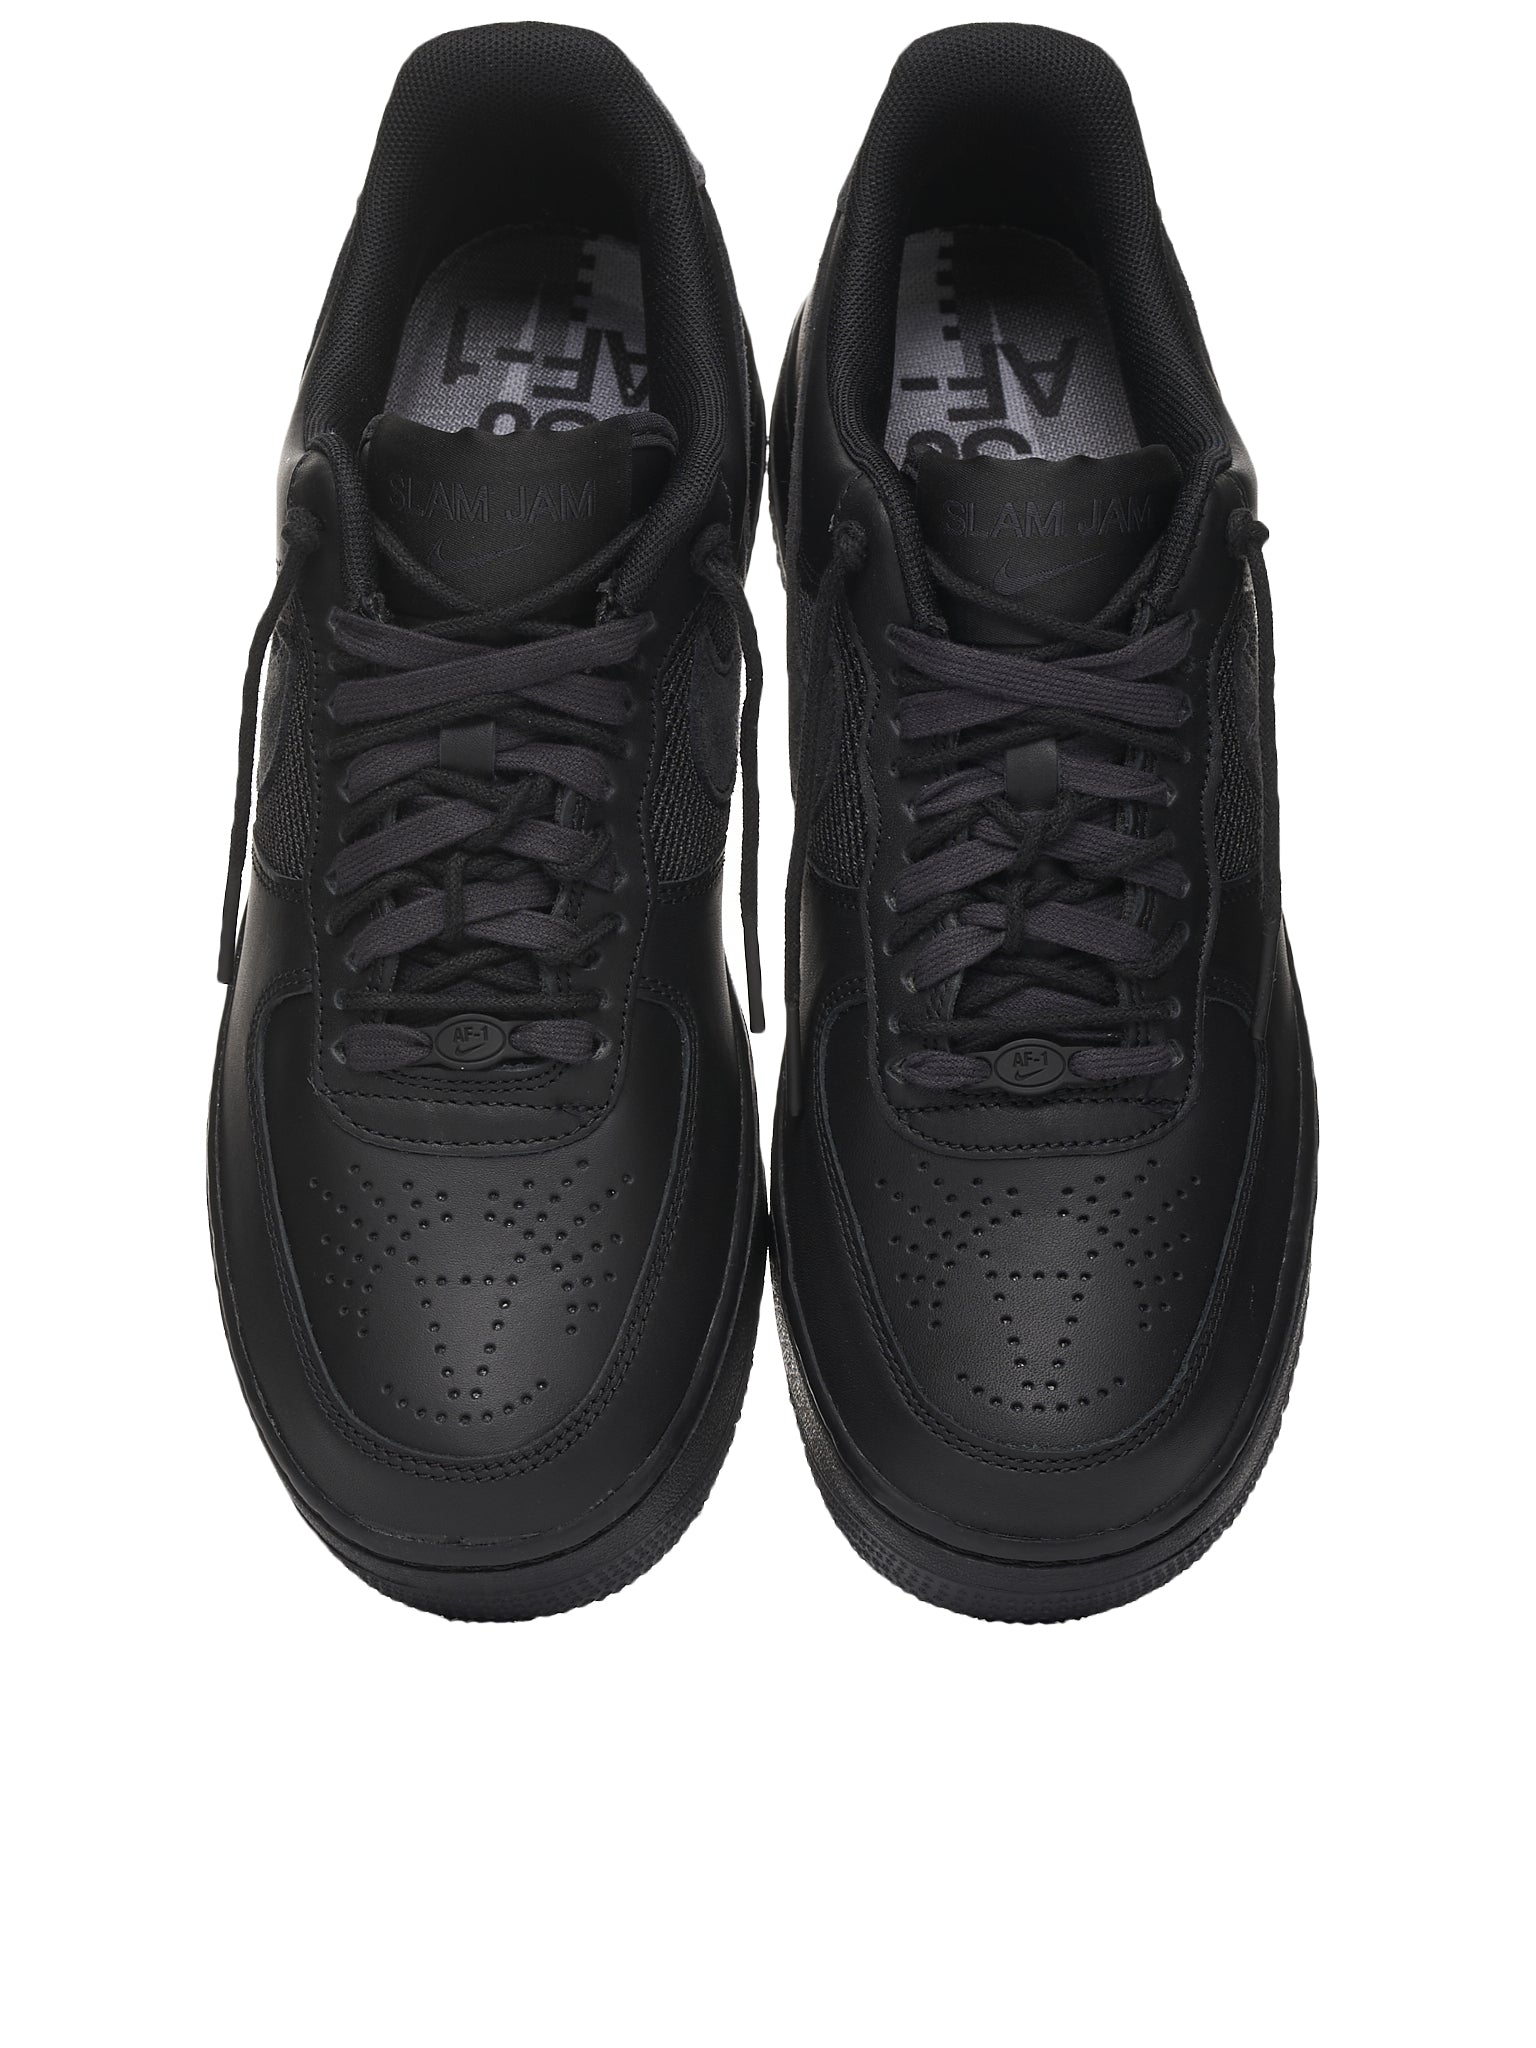 Nike Air Force 1 Low x Slam Jam Men's Shoes. Nike LU